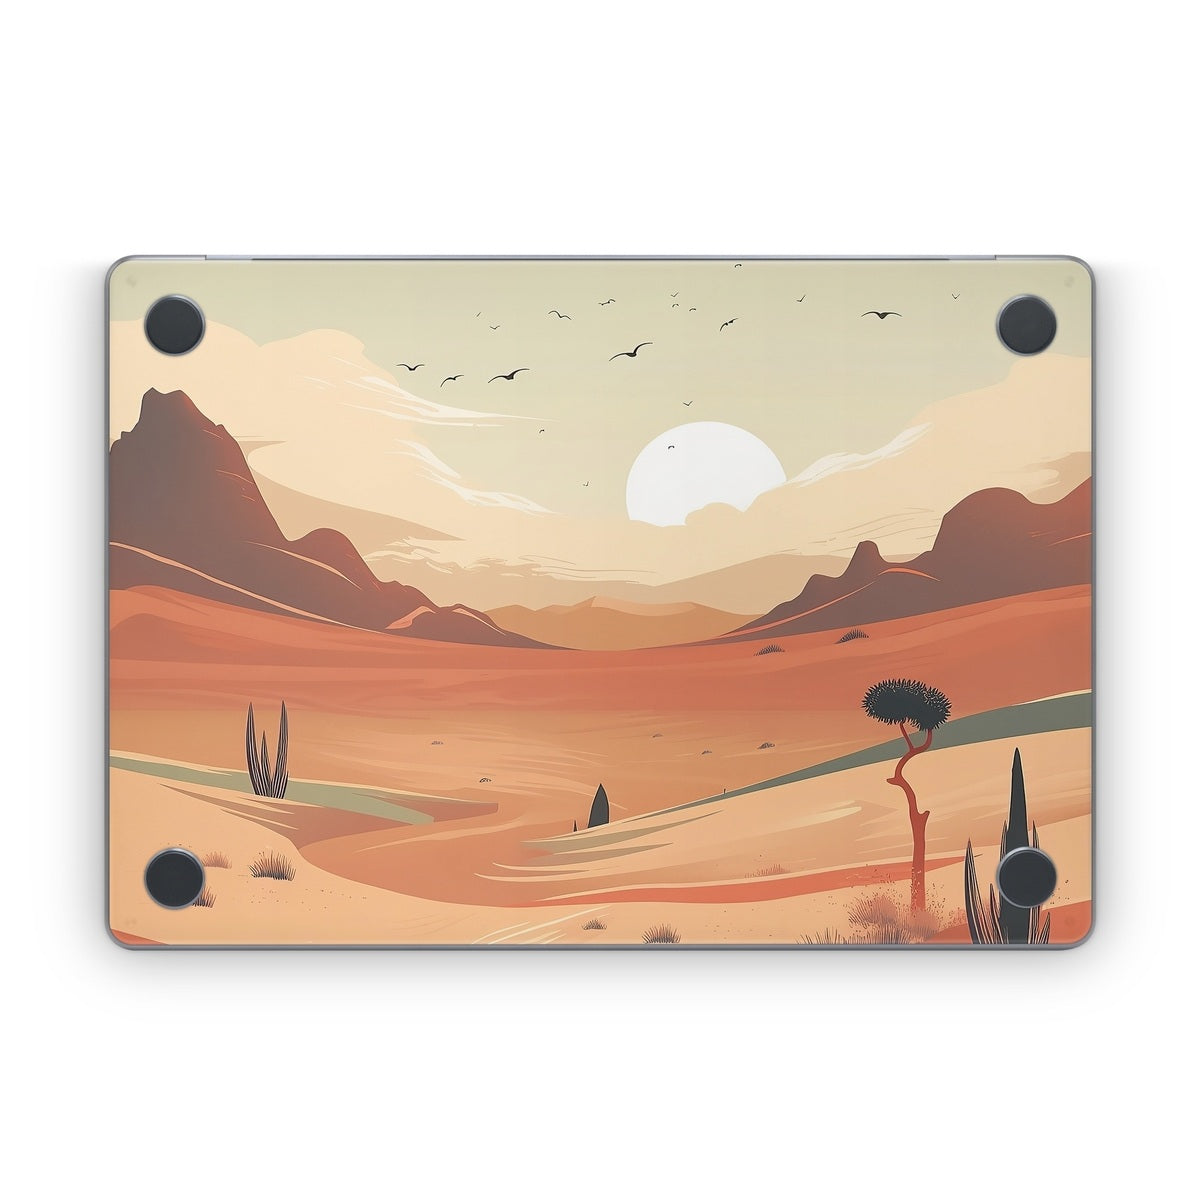 Meandering Desert - Apple MacBook Skin